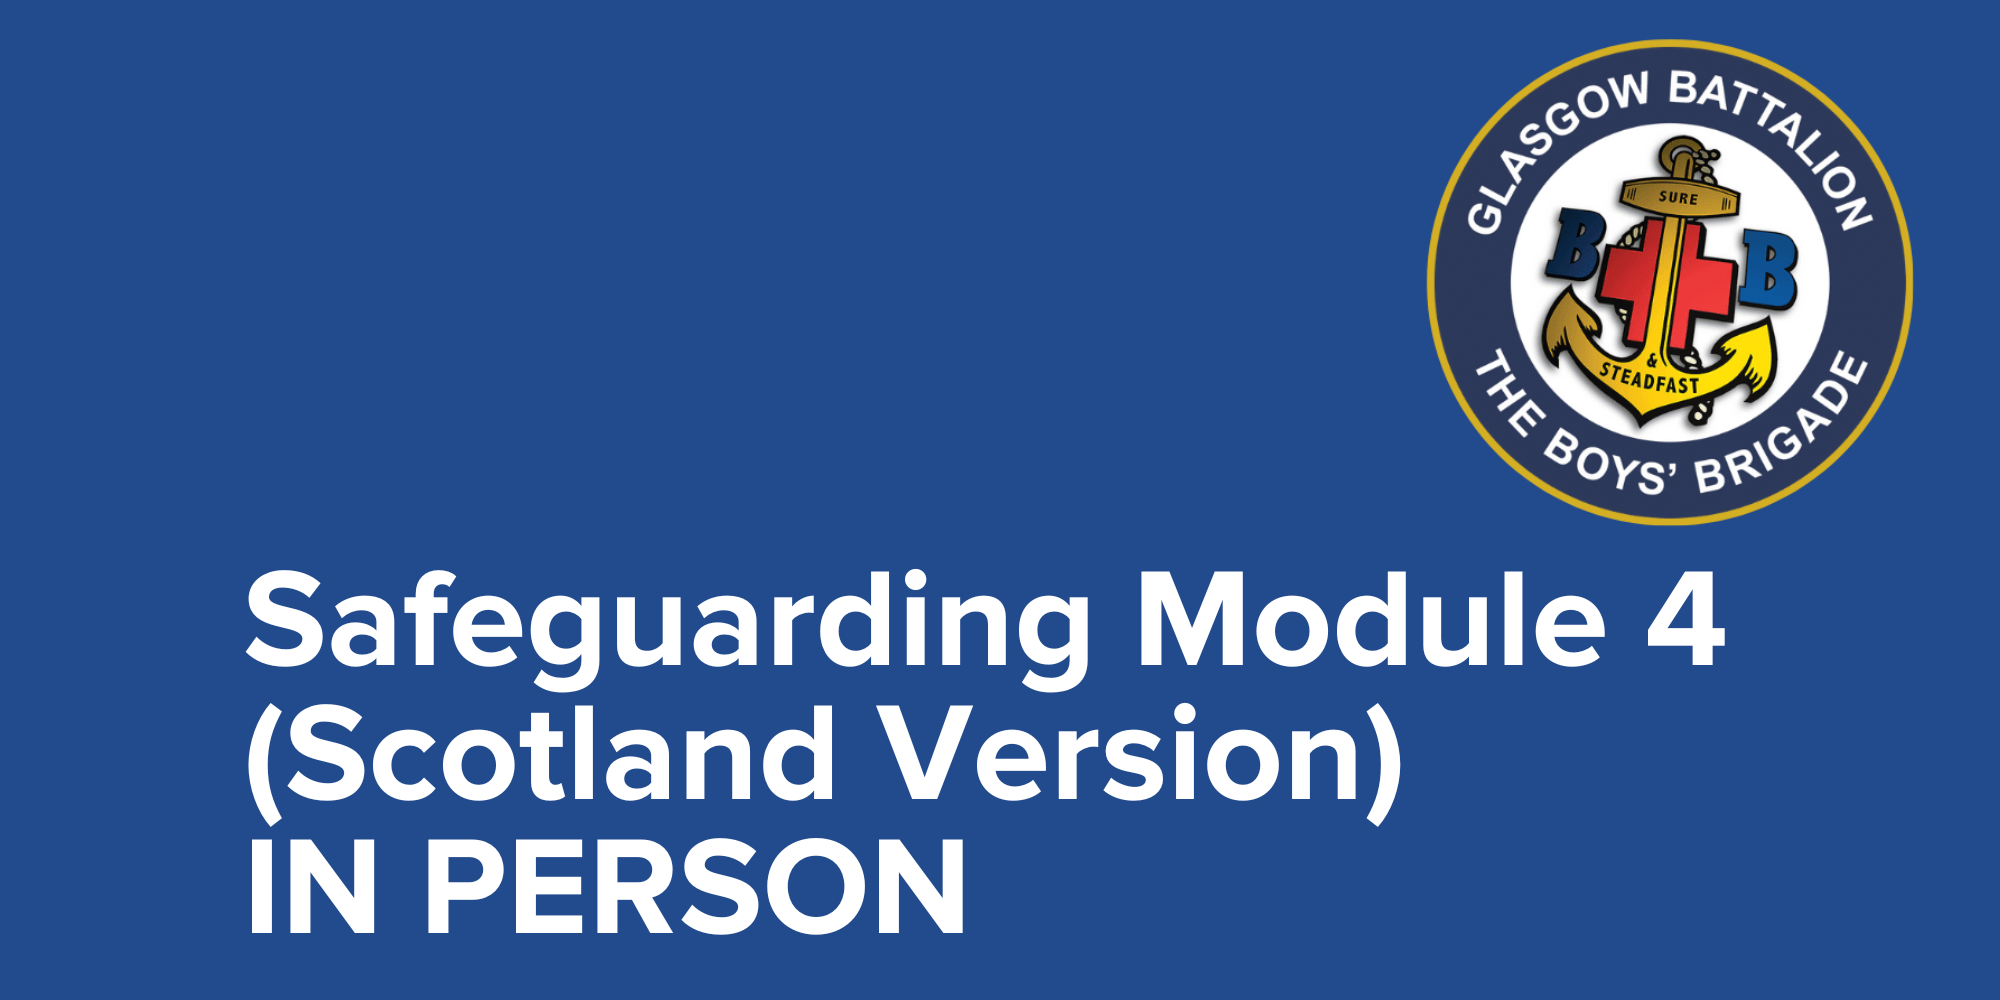 Boys' Brigade UK & RoI- Safeguarding Module 4 (Scotland Version) - Face to Face Course